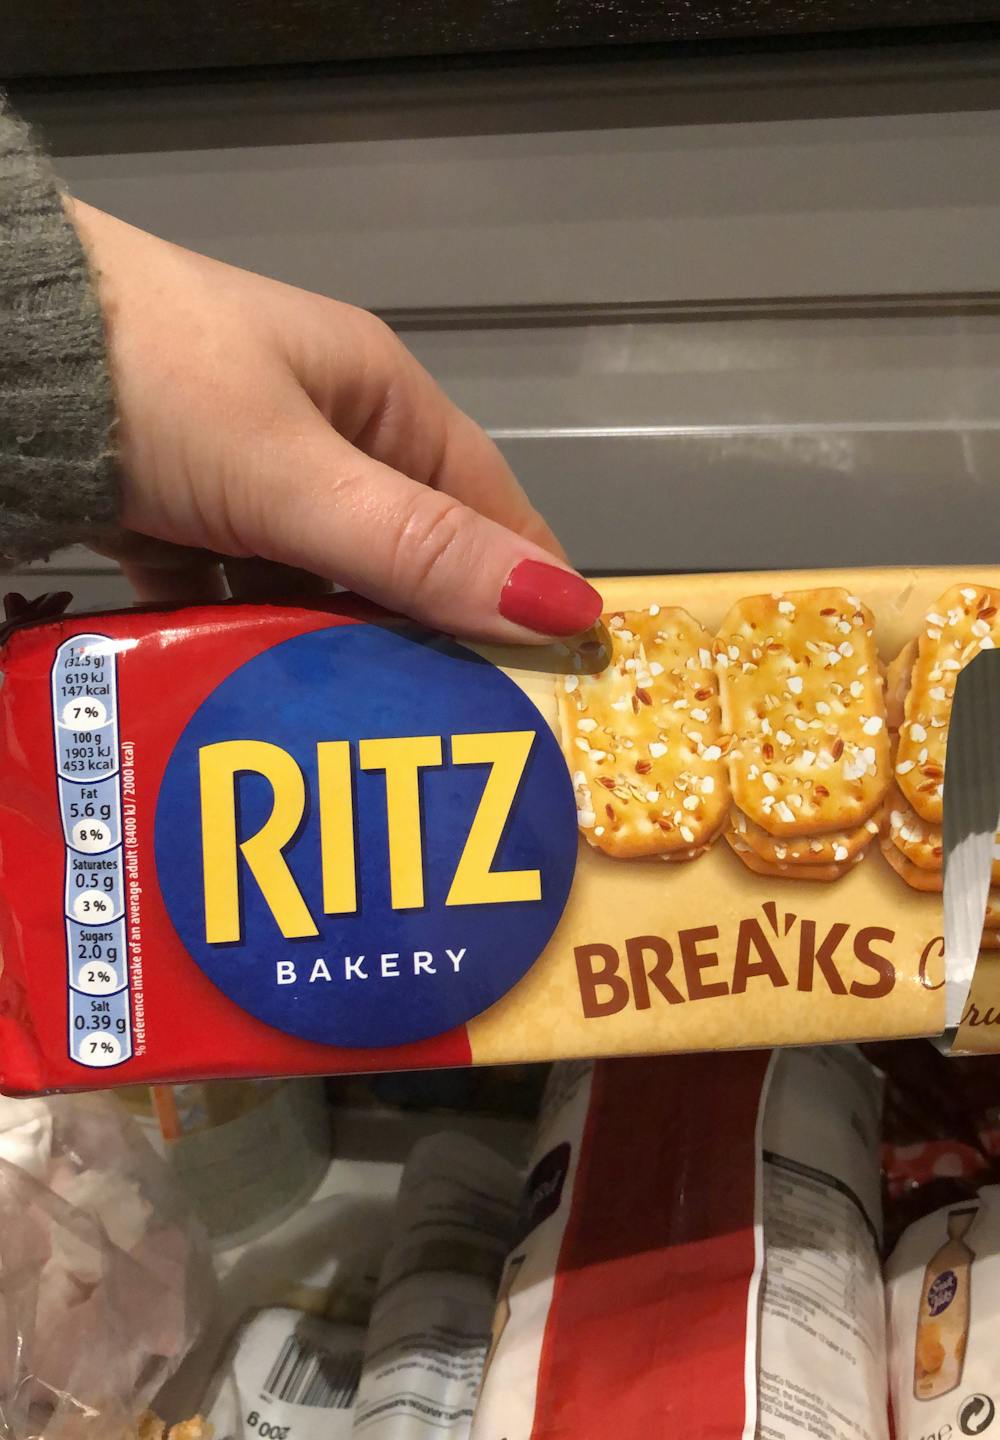 Breaks, Ritz bakery